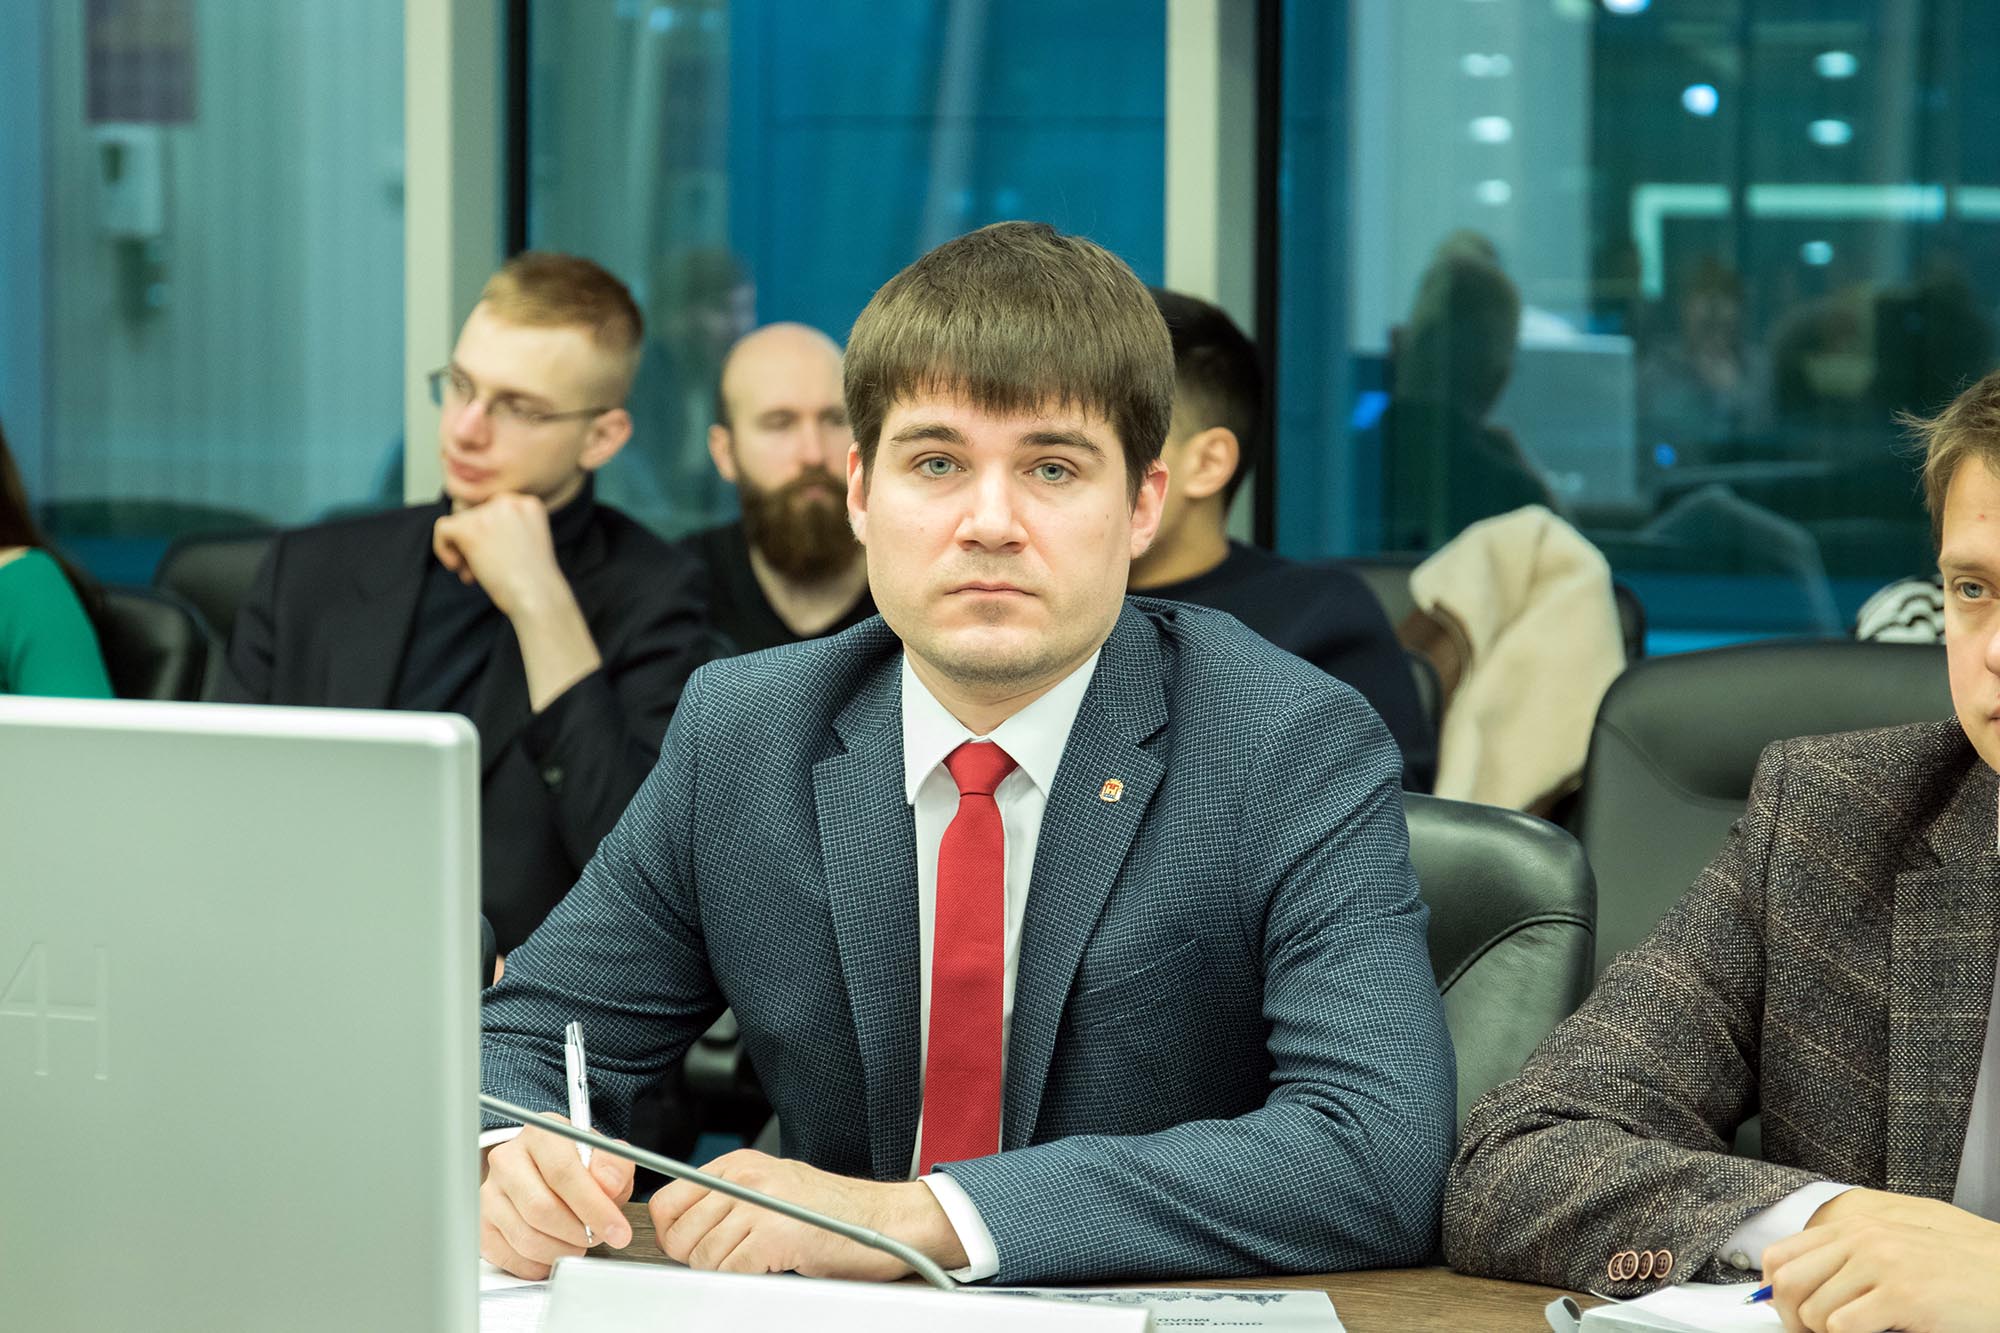 Семенов Андрей Васильевич - Вовлечение молодежи в социально-экономическое развитие регионов - молодежная комиссия